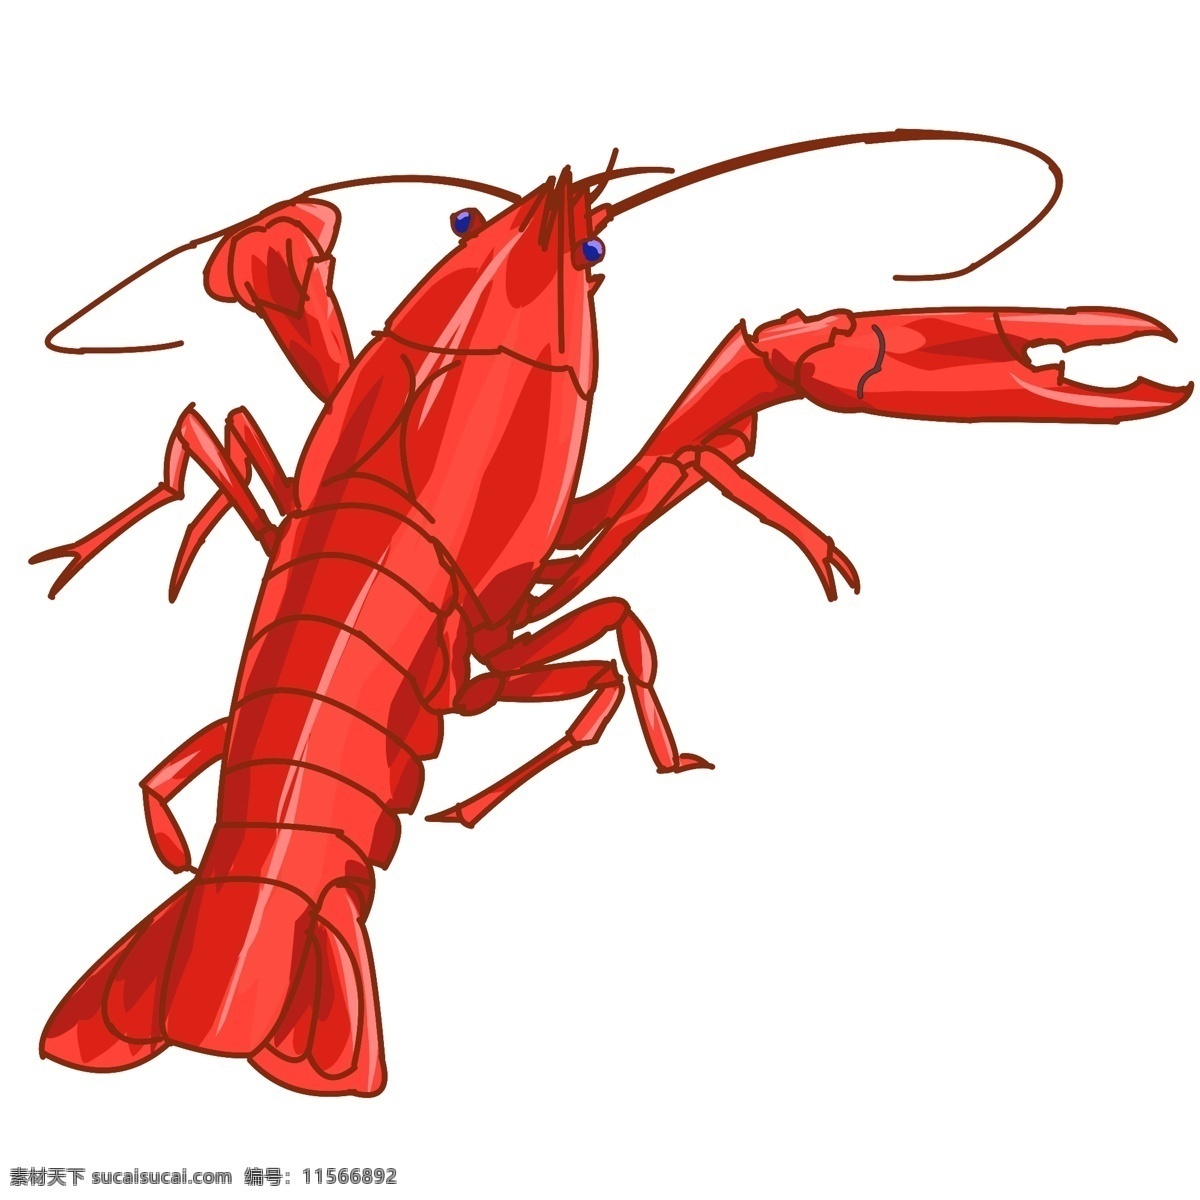 可爱红色龙虾 龙虾 水族馆 动物